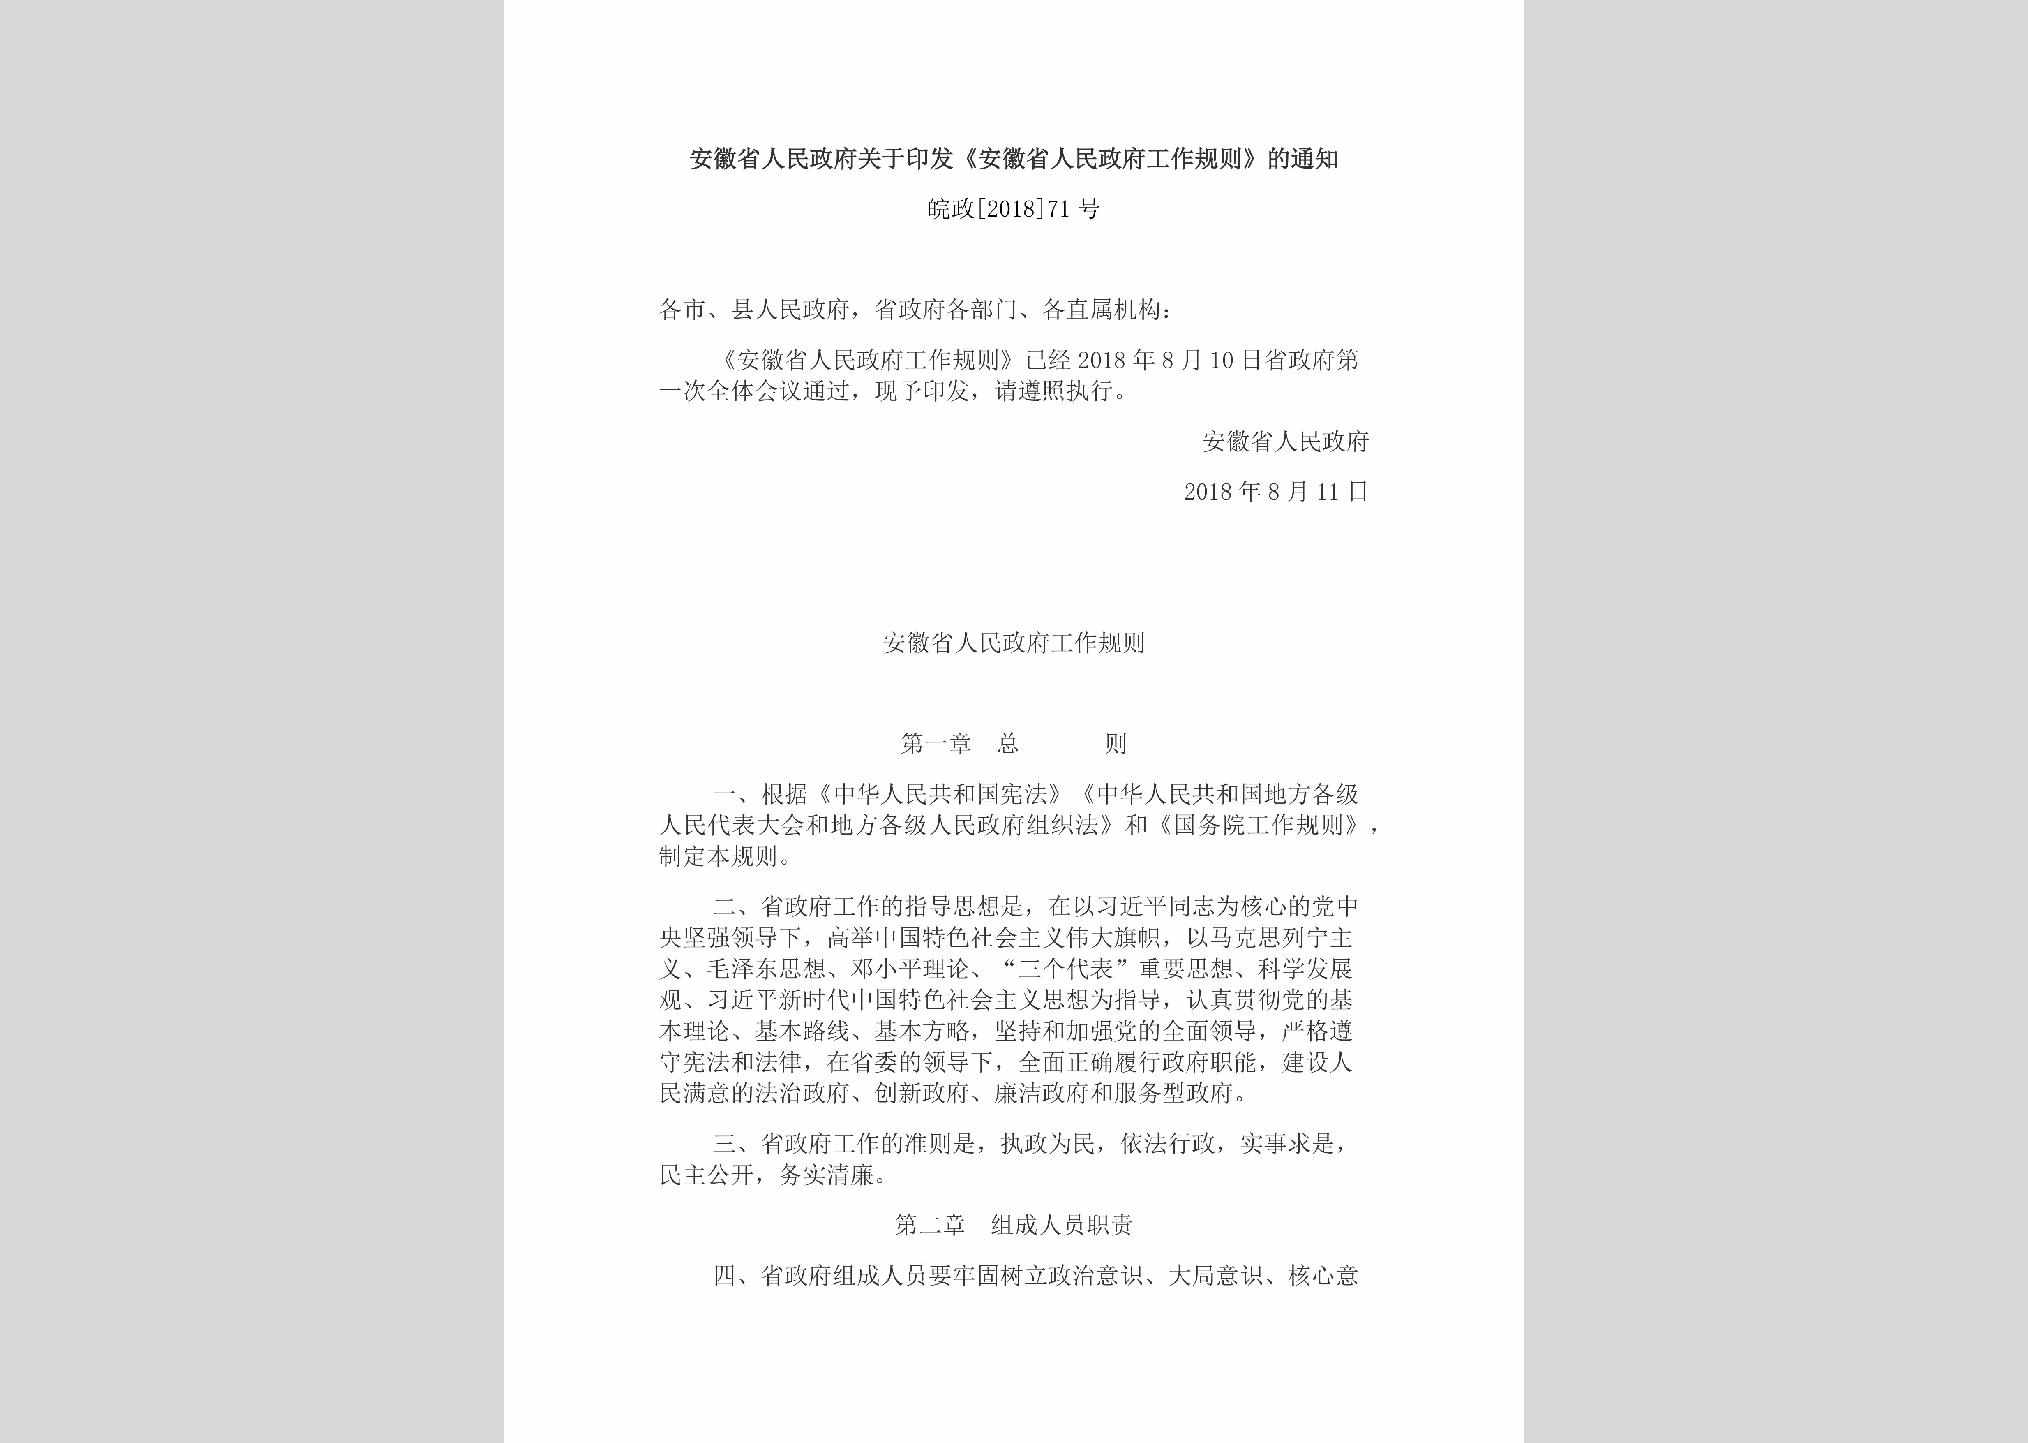 皖政[2018]71号：安徽省人民政府关于印发《安徽省人民政府工作规则》的通知